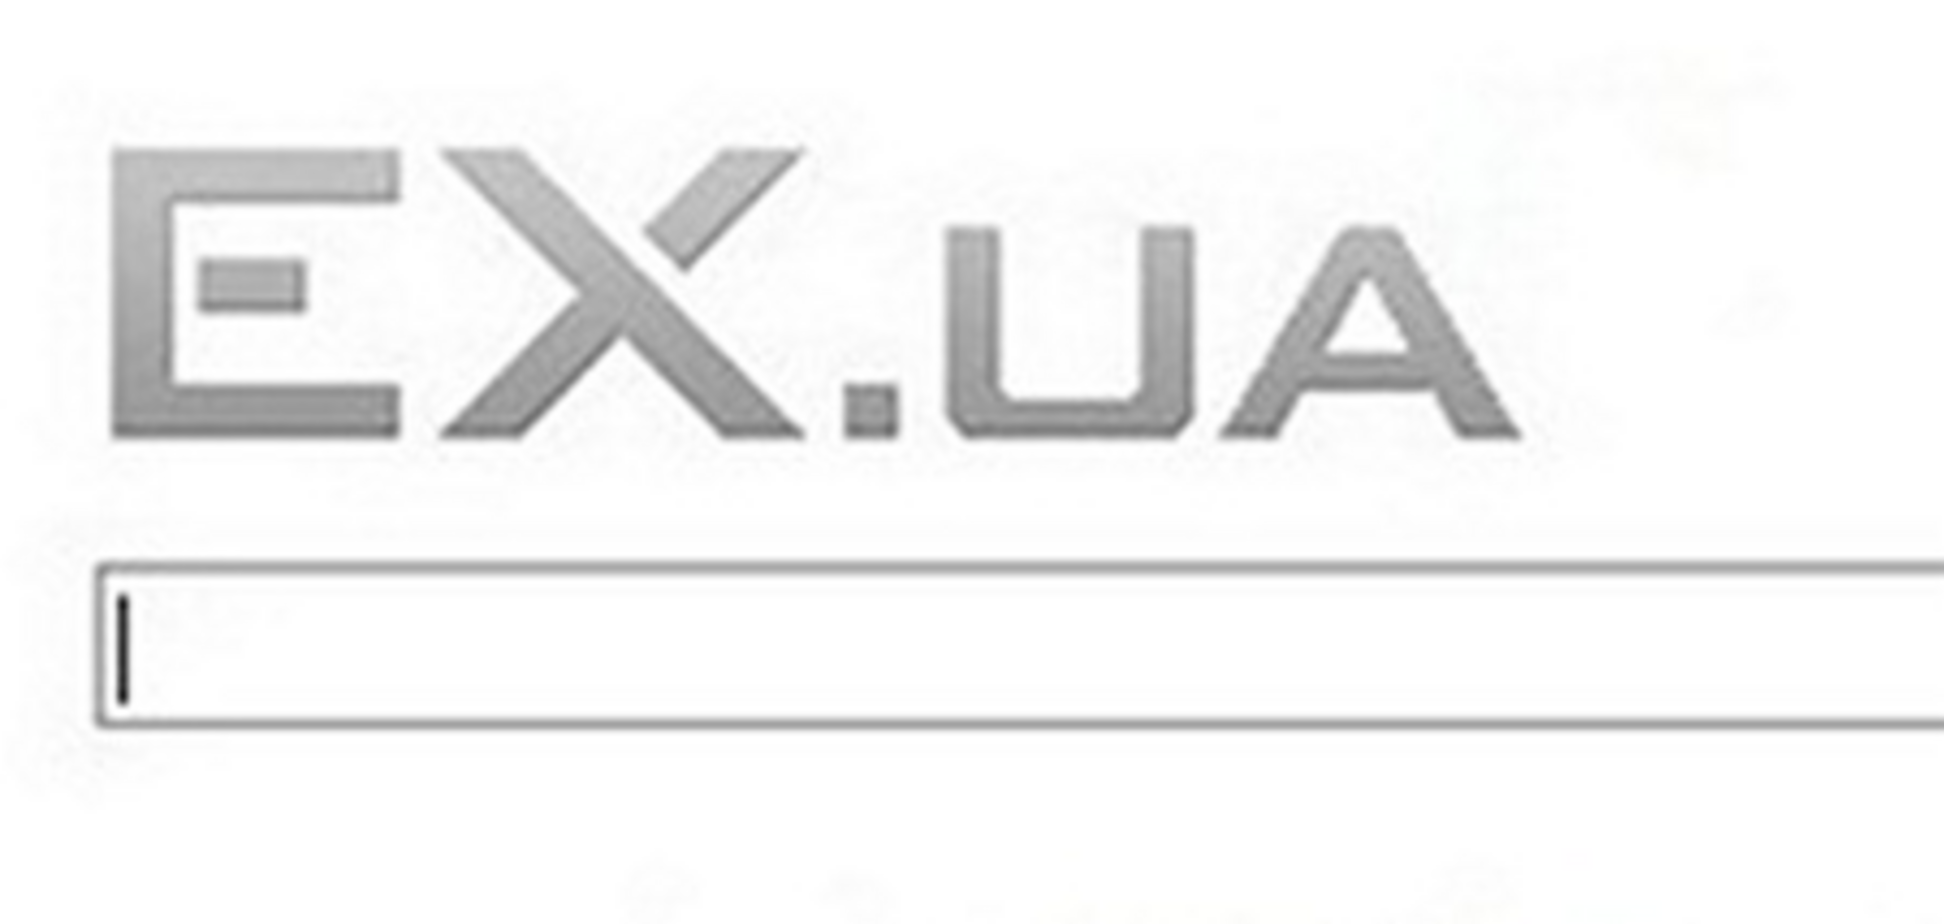 В EX.UA готовы сдать пользователей в обмен на серверы - МВД